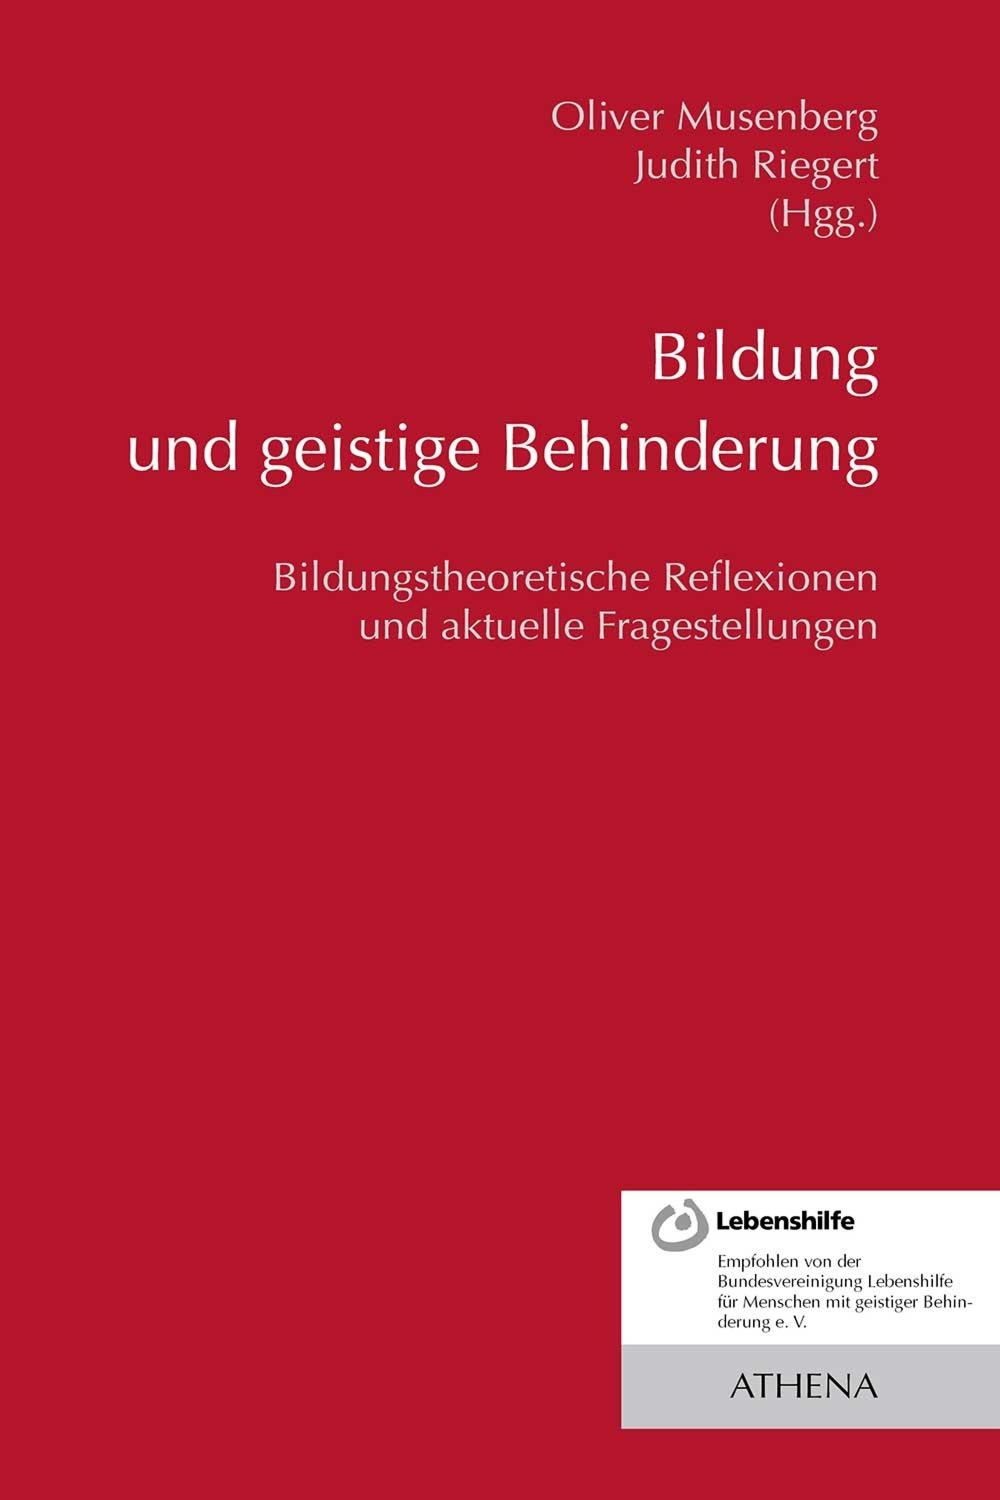 Bildung und geistige Behinderung - Oliver Musenberg, Judith Riegert